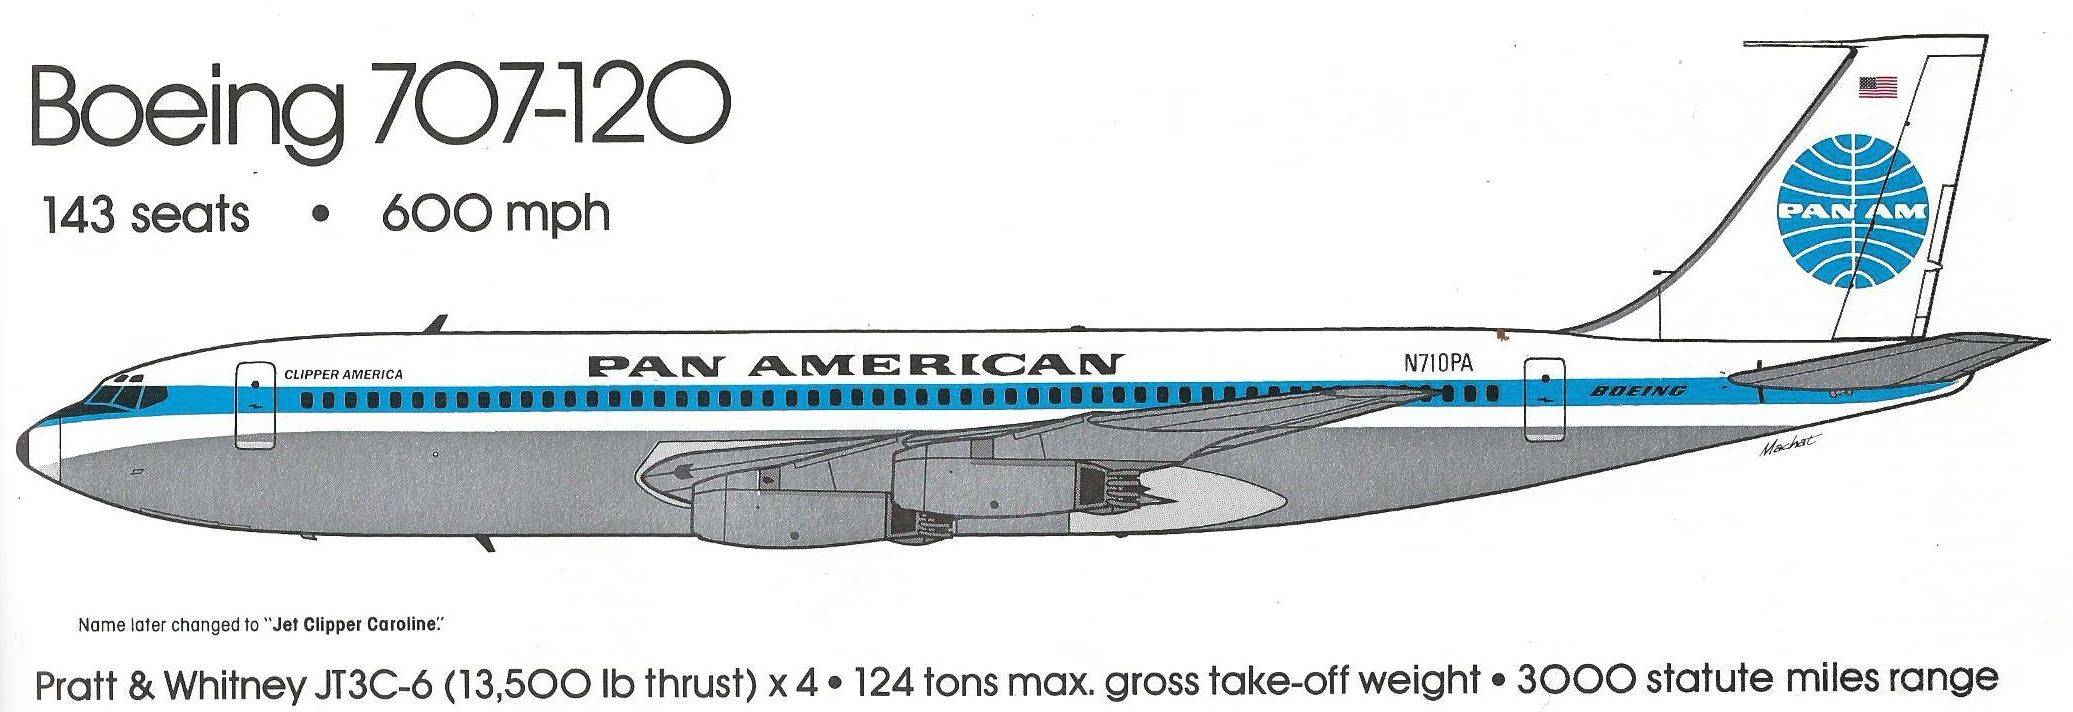 Boeing 707, схема салона самолета и расход топлива